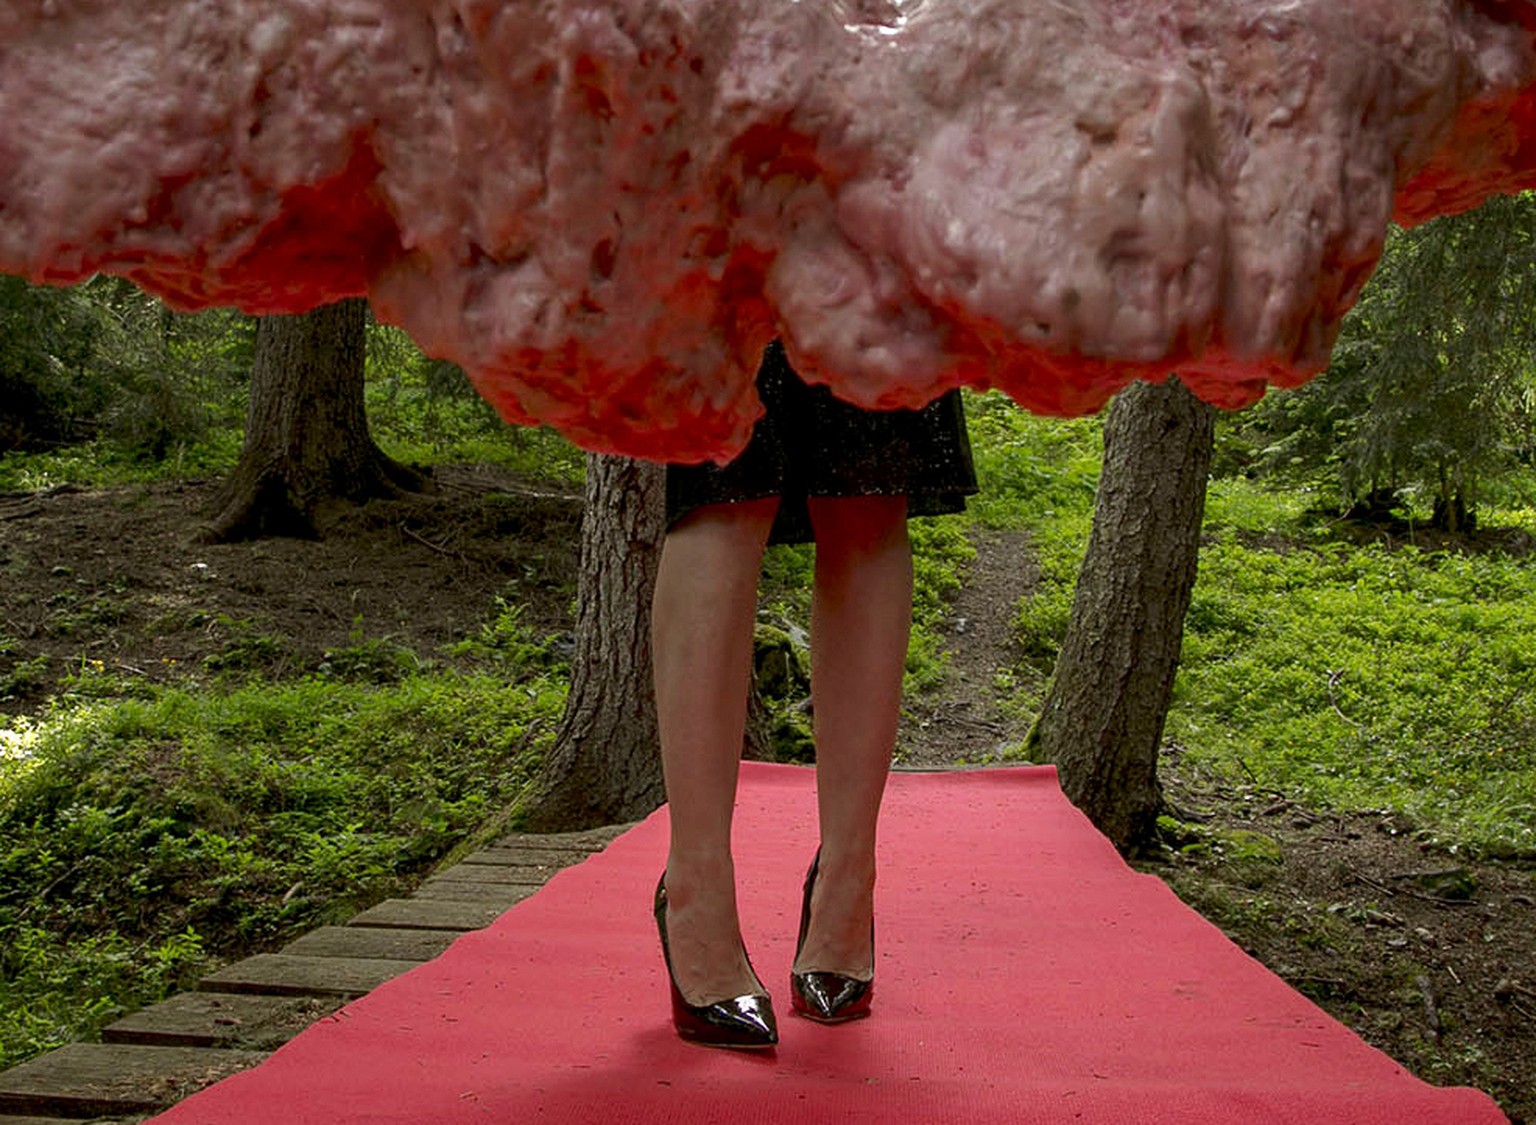 Hasler auf dem roten Teppich ihrer «Avant/Après»-Installation.